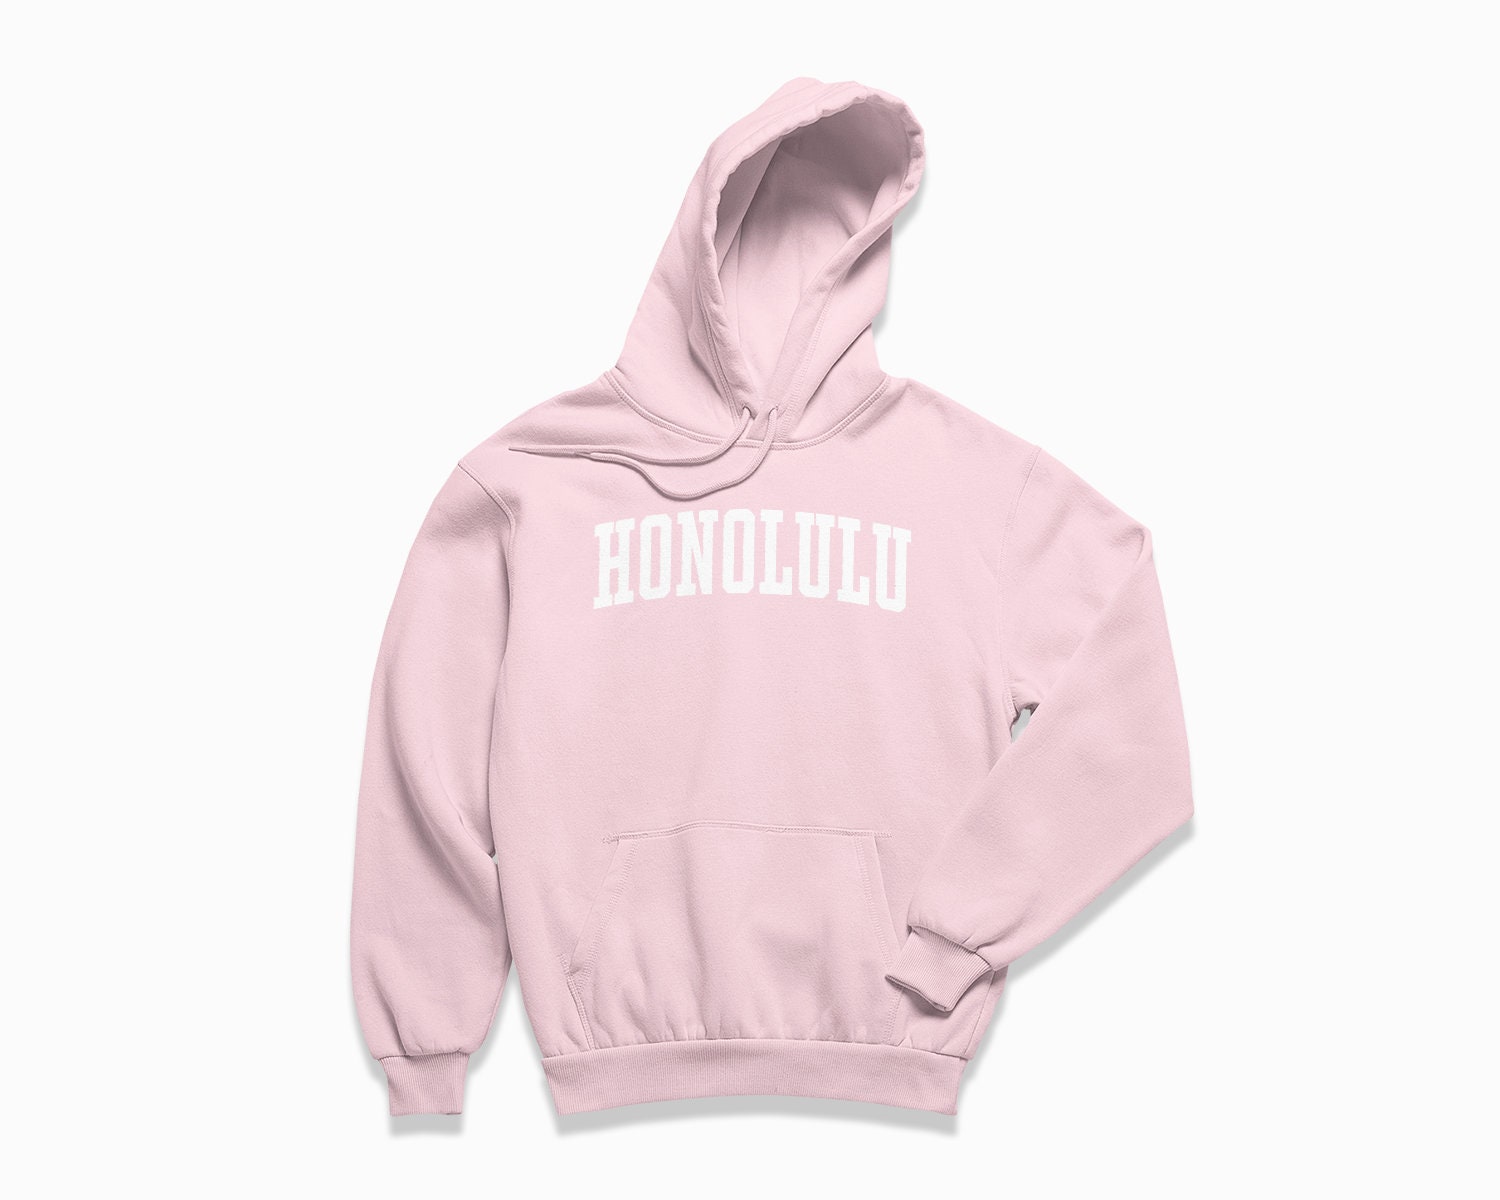 Honolulu Hoodie: Honolulu Hawaii Hooded Sweatshirt / College | Etsy